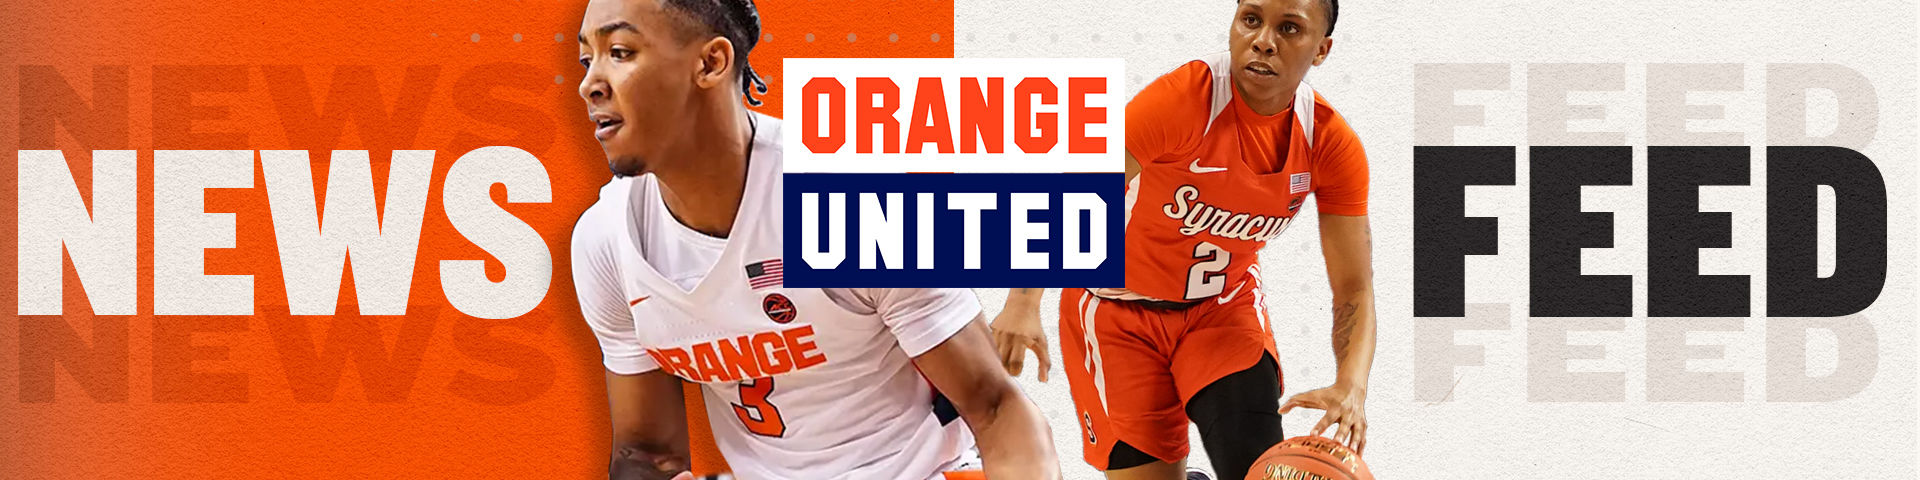 www.orangeunited.com